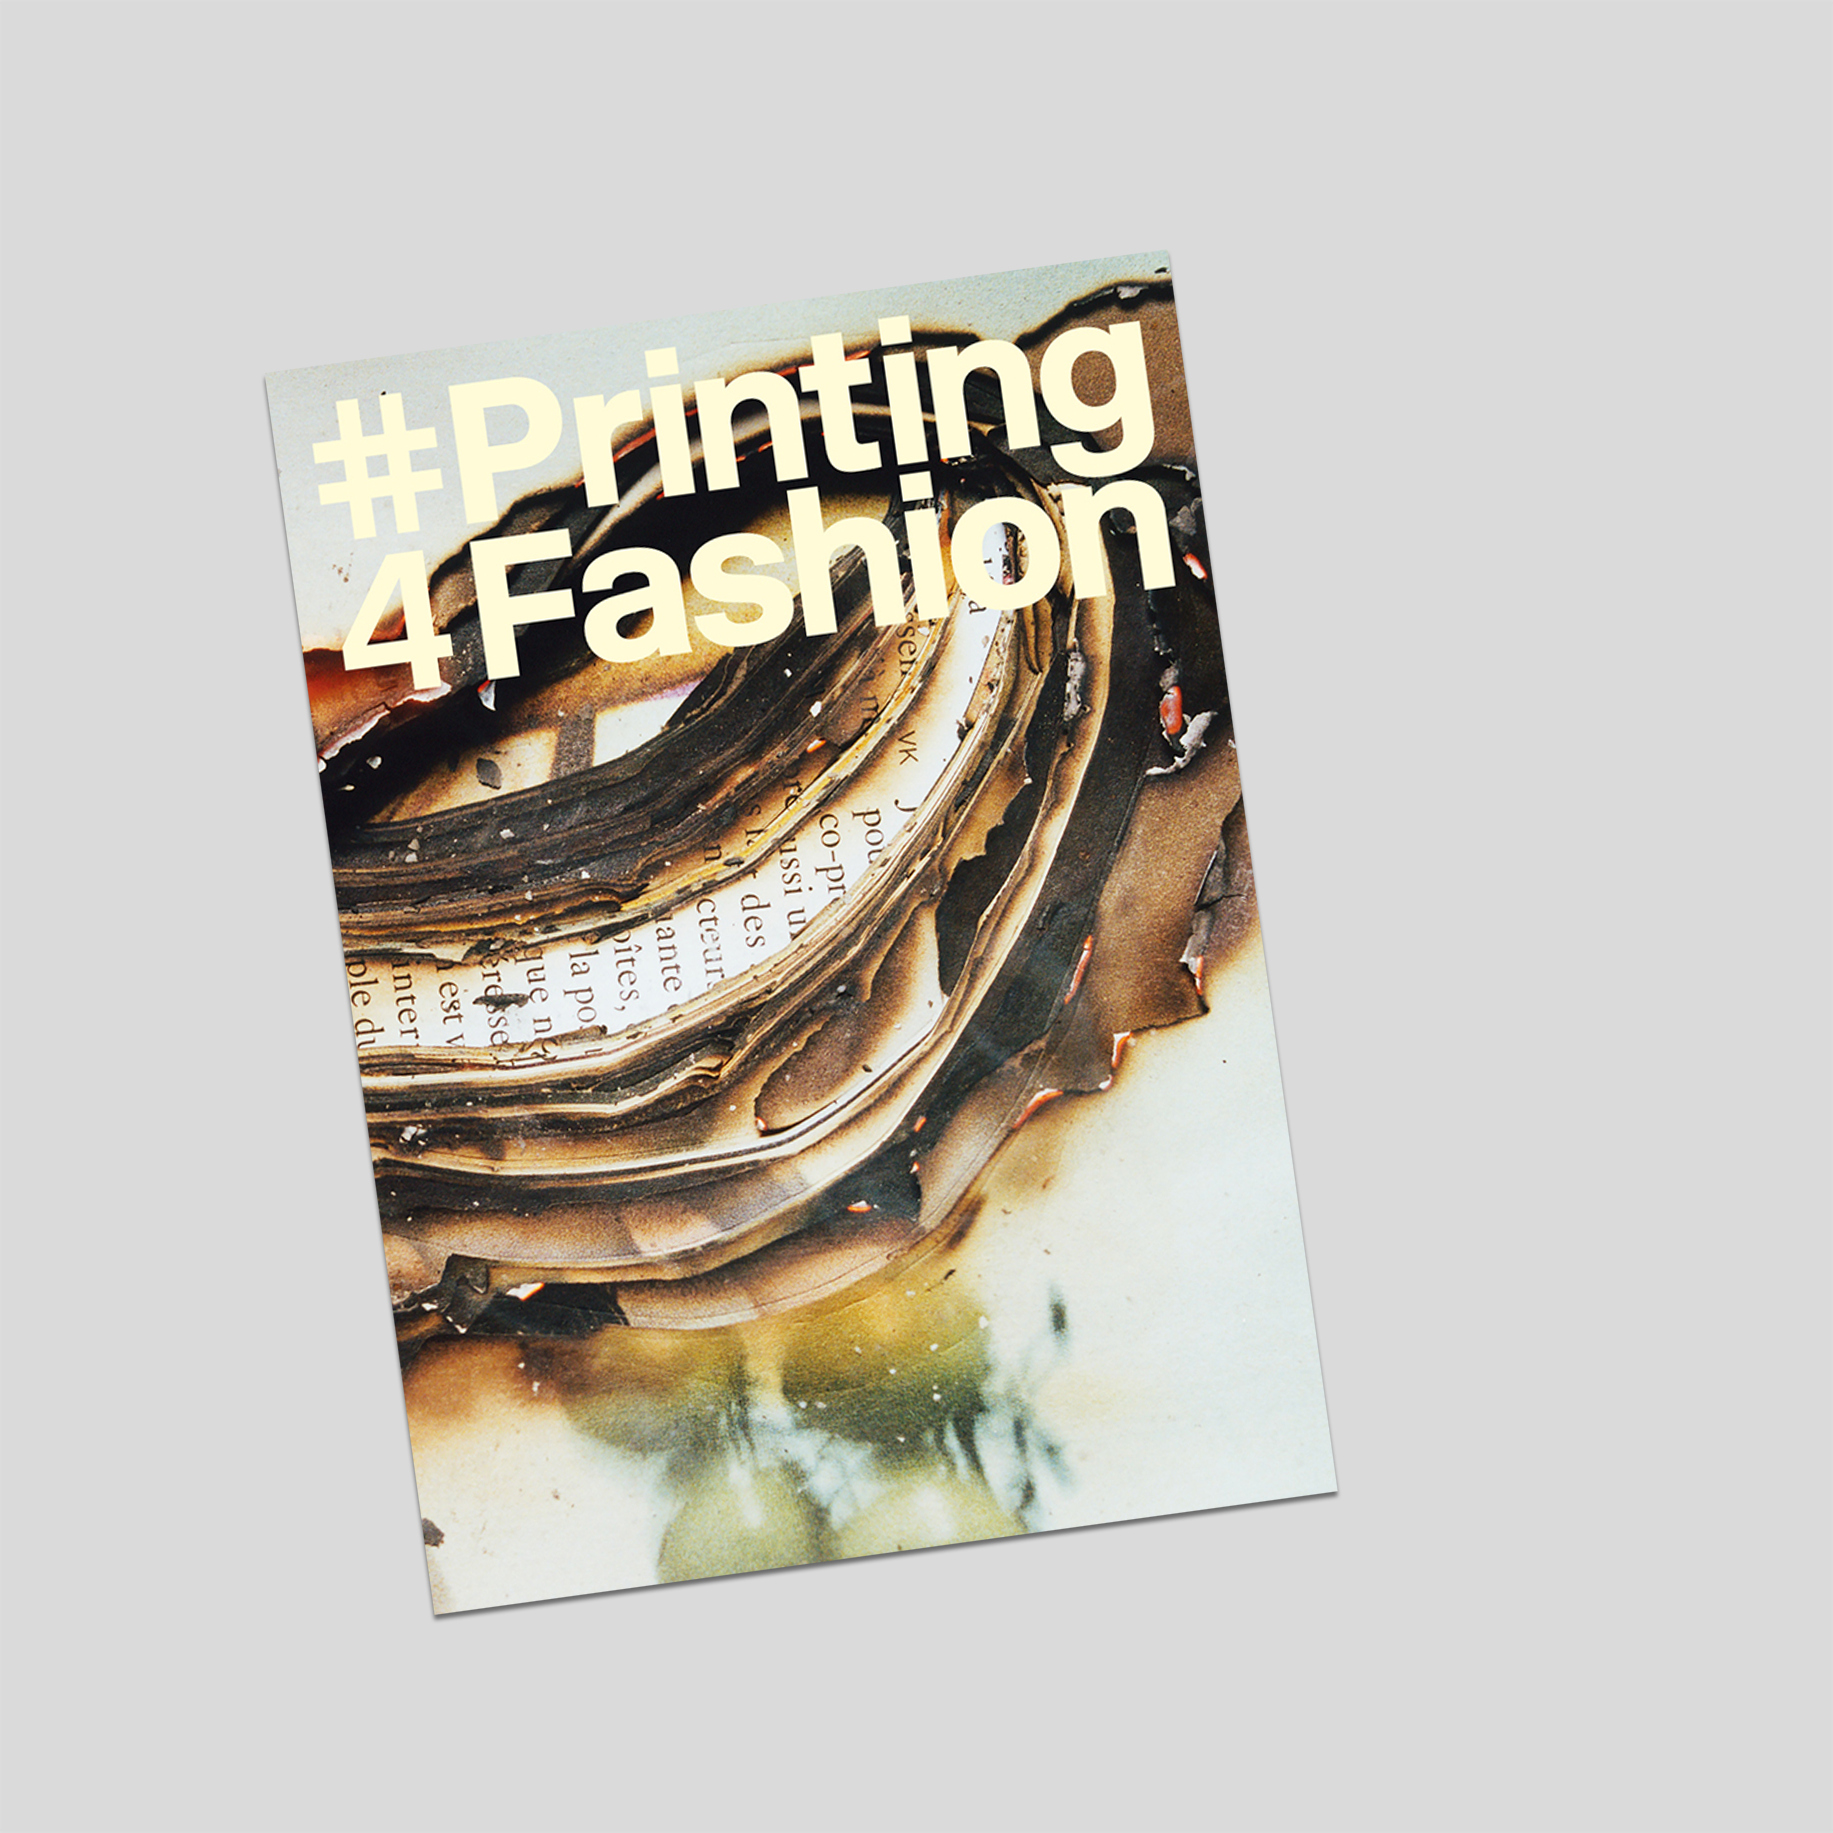 Printing fashion #4